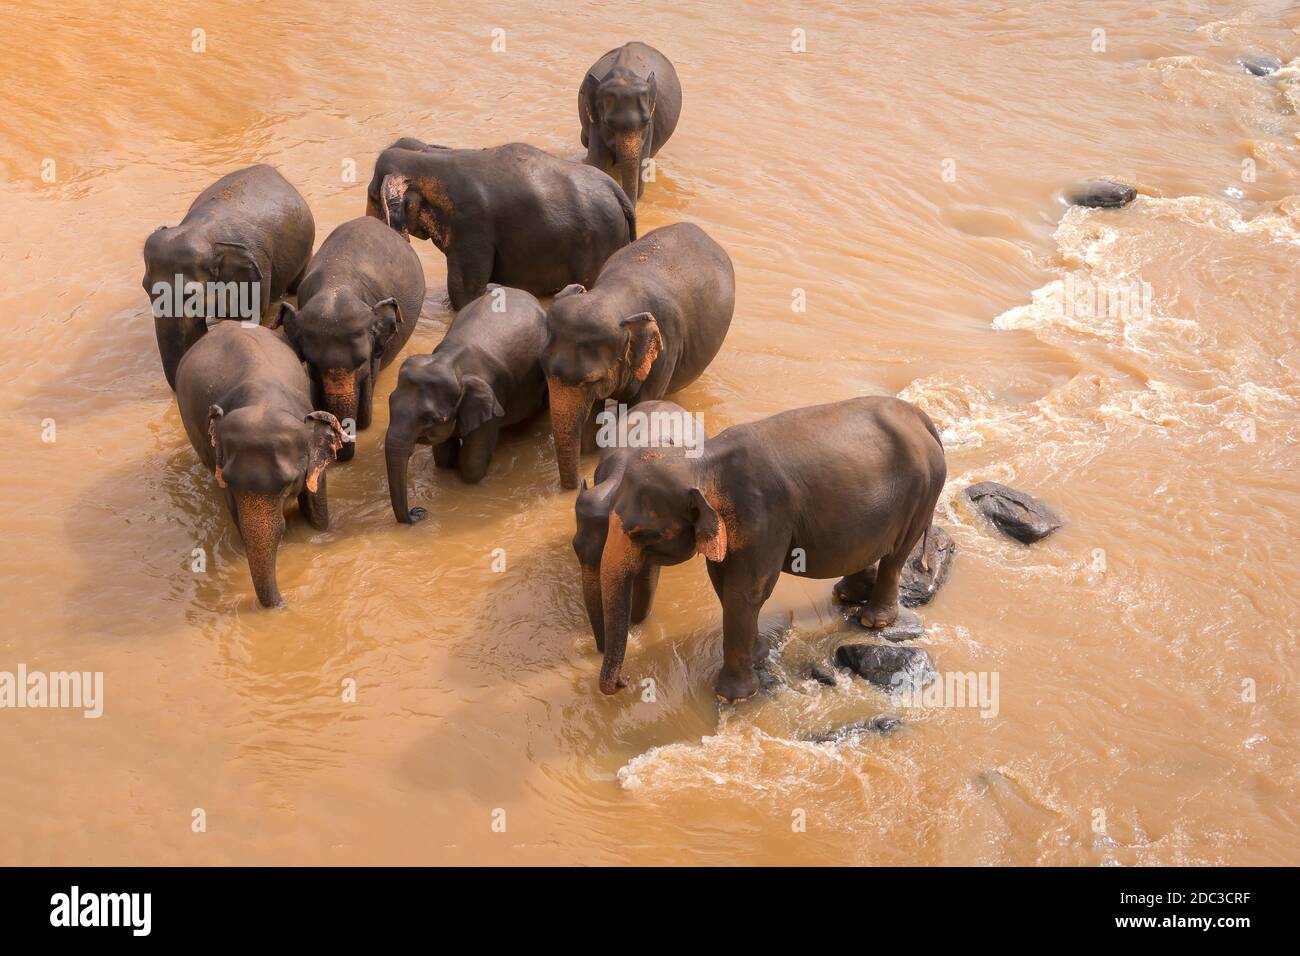 Die jungen Elefanten gingen hinaus, um zu trinken. Elefanten baden im orangefarbenen Fluss. Tierwelt von Sri Lanka. Stockfoto